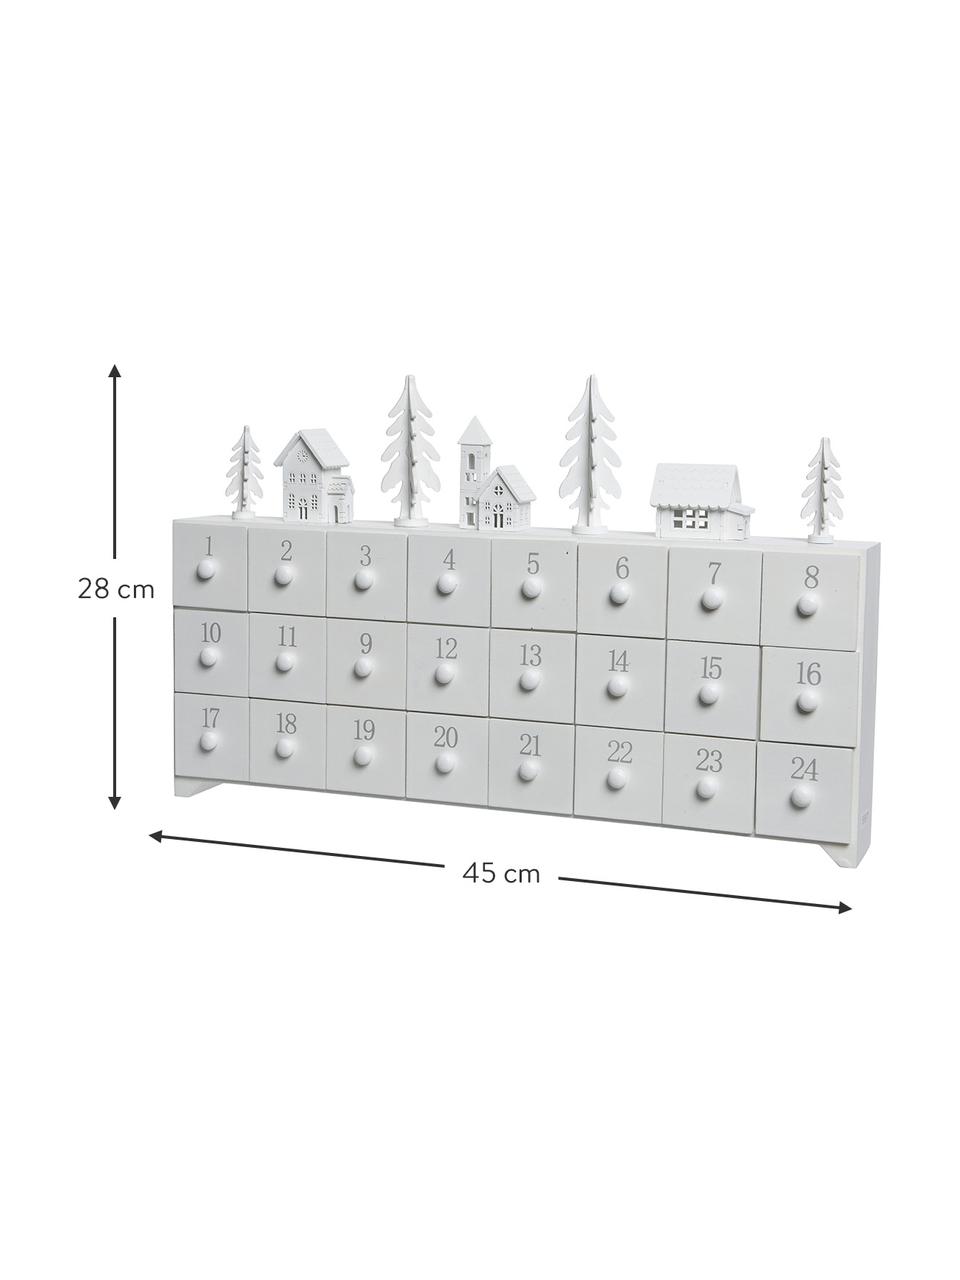 Calendario de Adviento Snow, Tablero de fibras de densidad media recubierto, Blanco, gris, An 45 x Al 28 cm